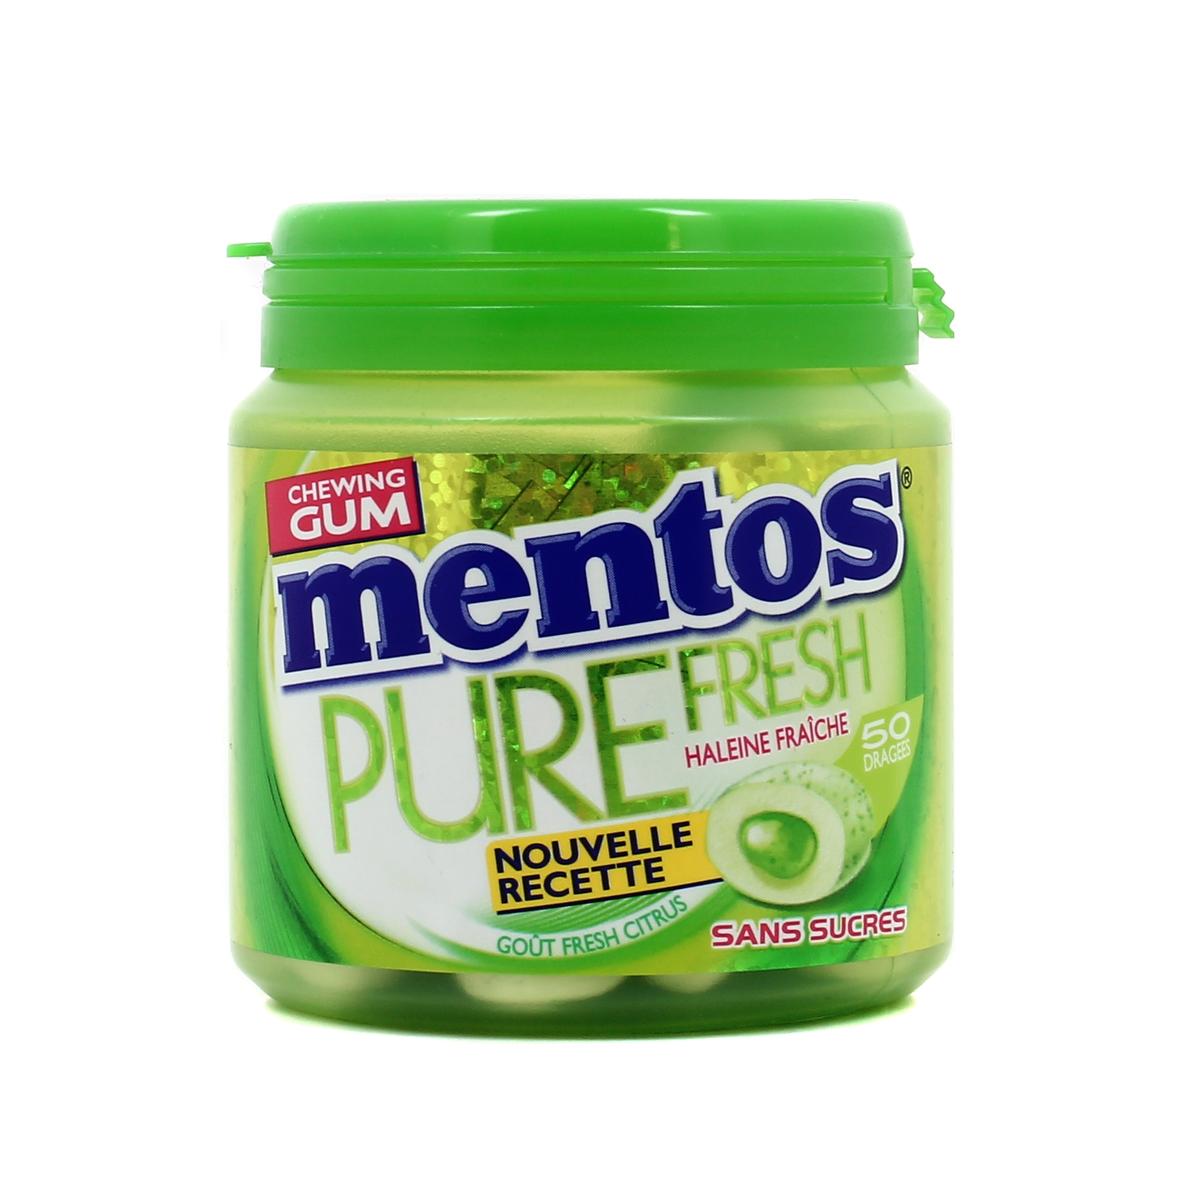 Acheter Mentos Bottle pure fresh citrus 50 dragées sans sucres, 100g